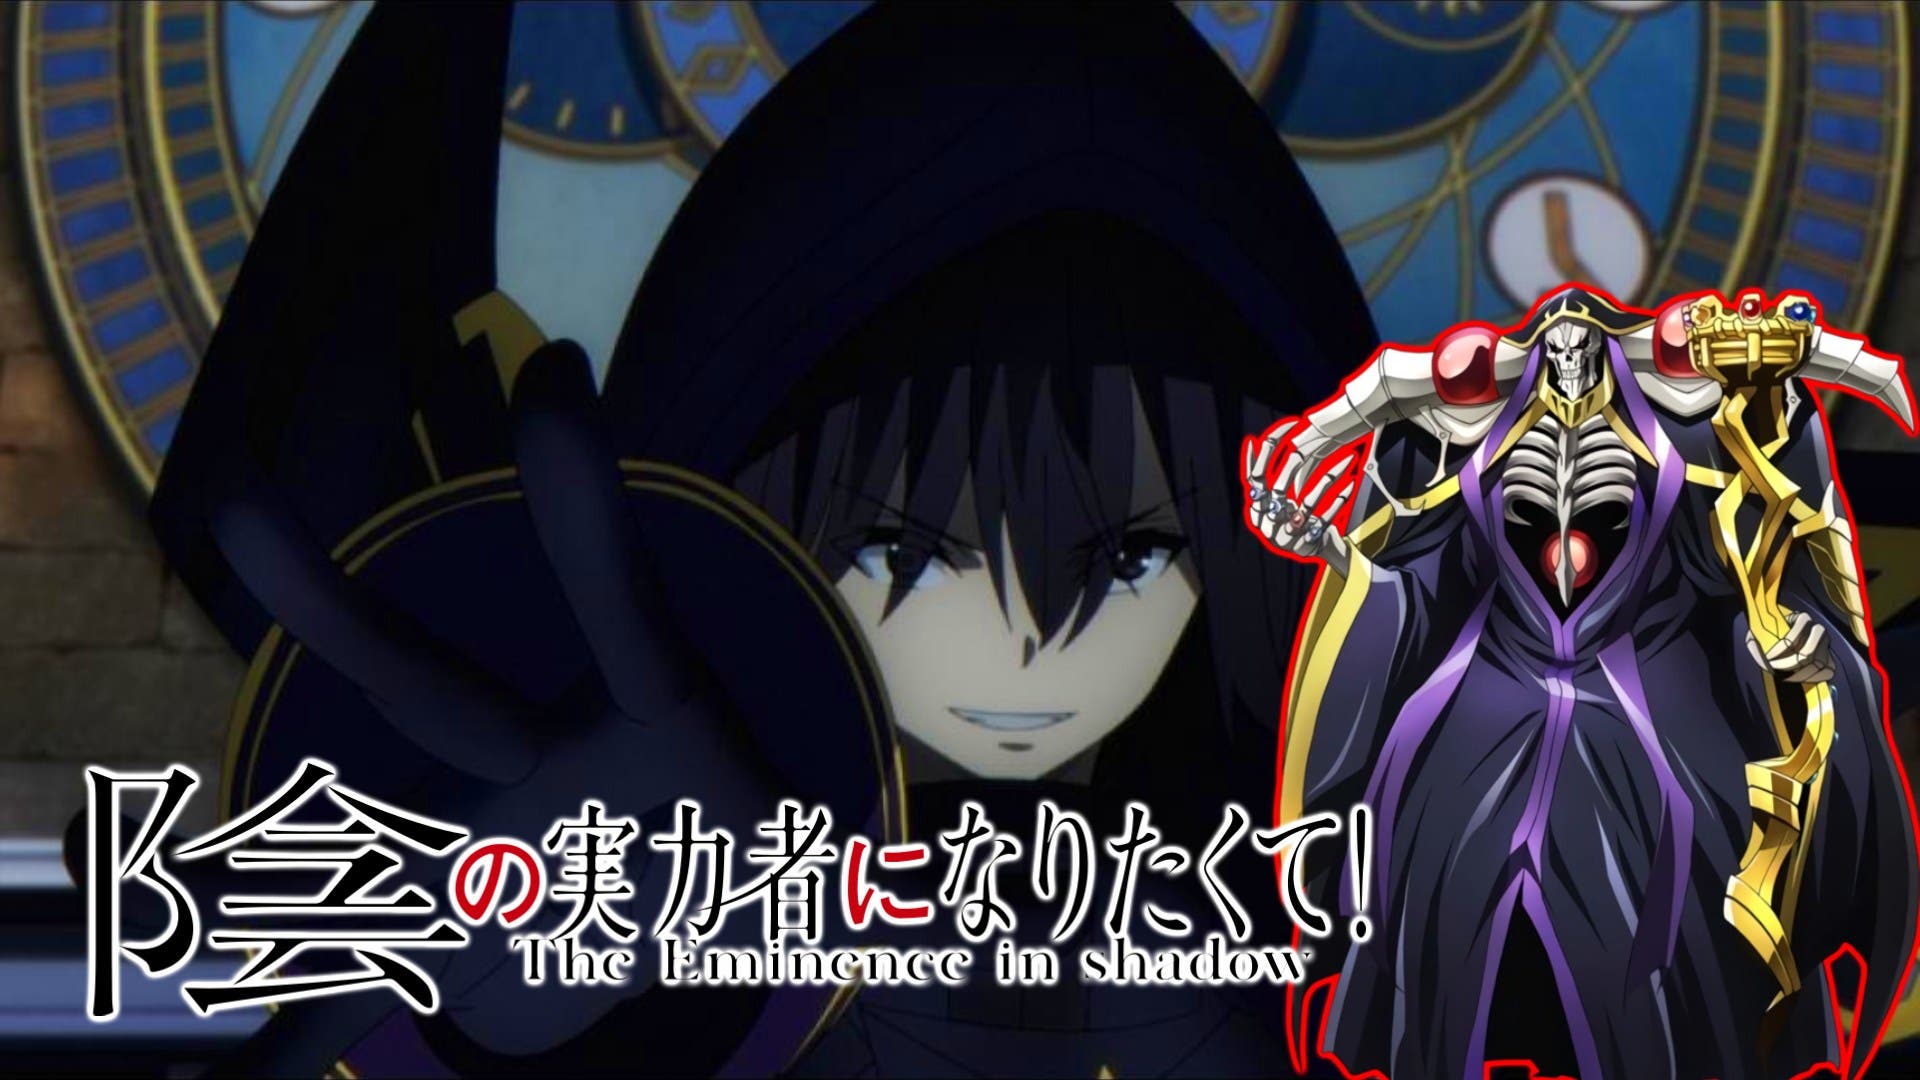 The Eminence in Shadow - O Destruidor de Isekais genéricos! 